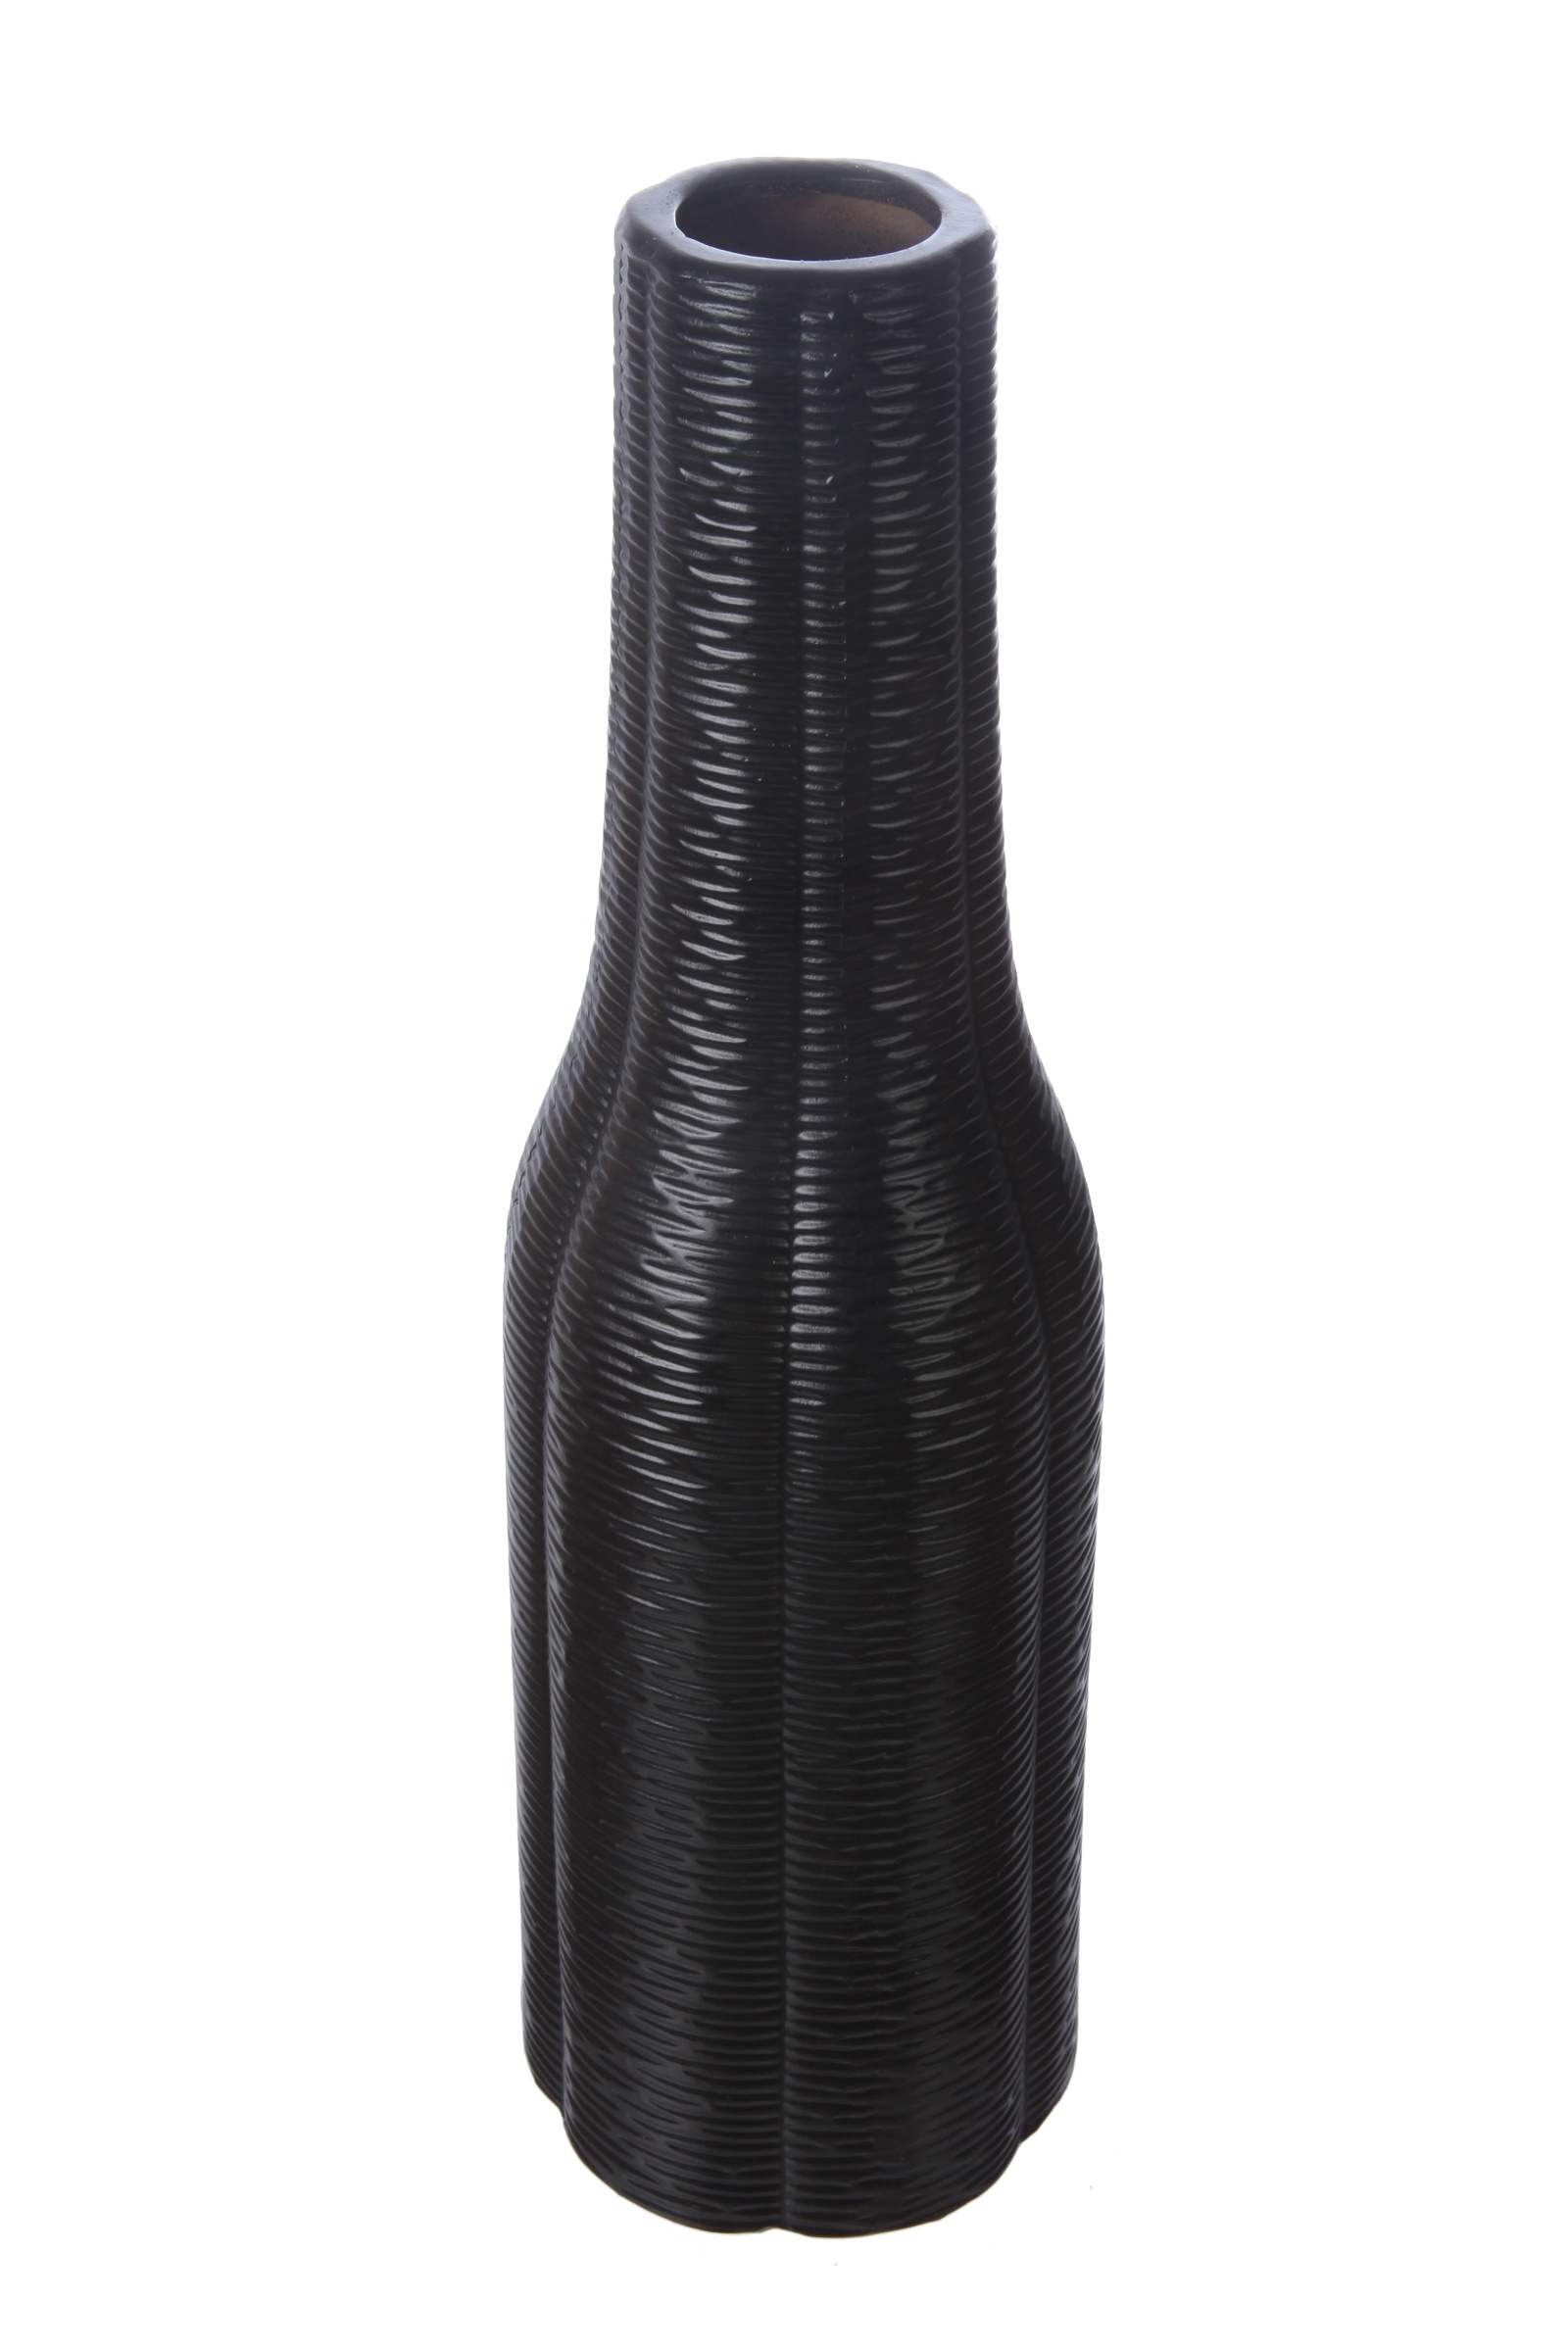 Ваза IsmatDecor Керамическая ваза, VB-96 черный, черный